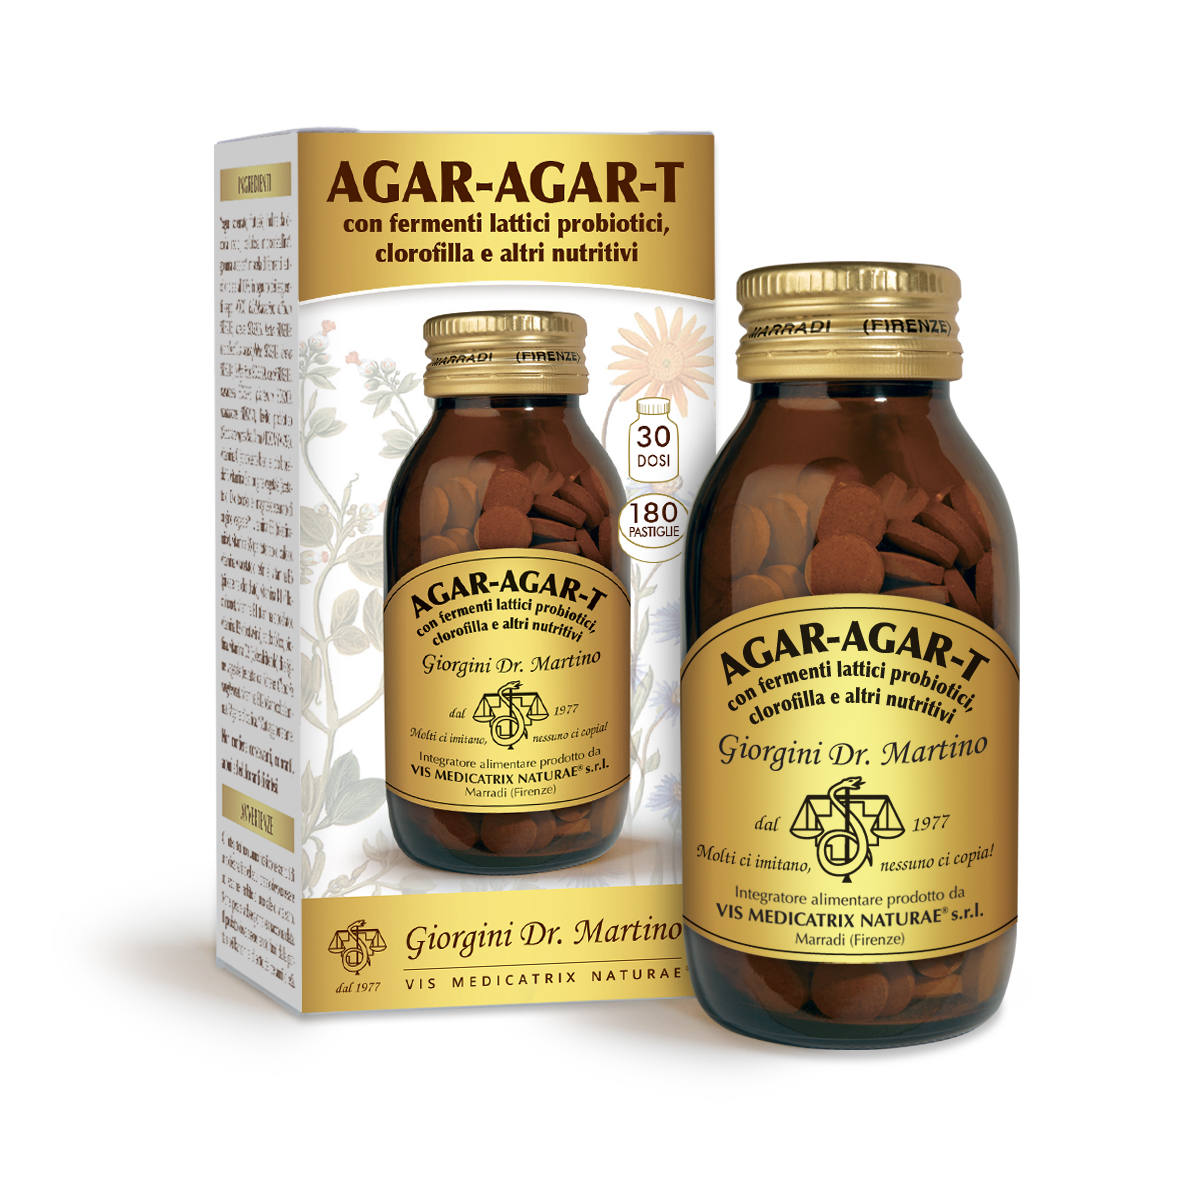 AGAR-AGAR-T con fermenti lattici e clorofilla 180 pastiglie